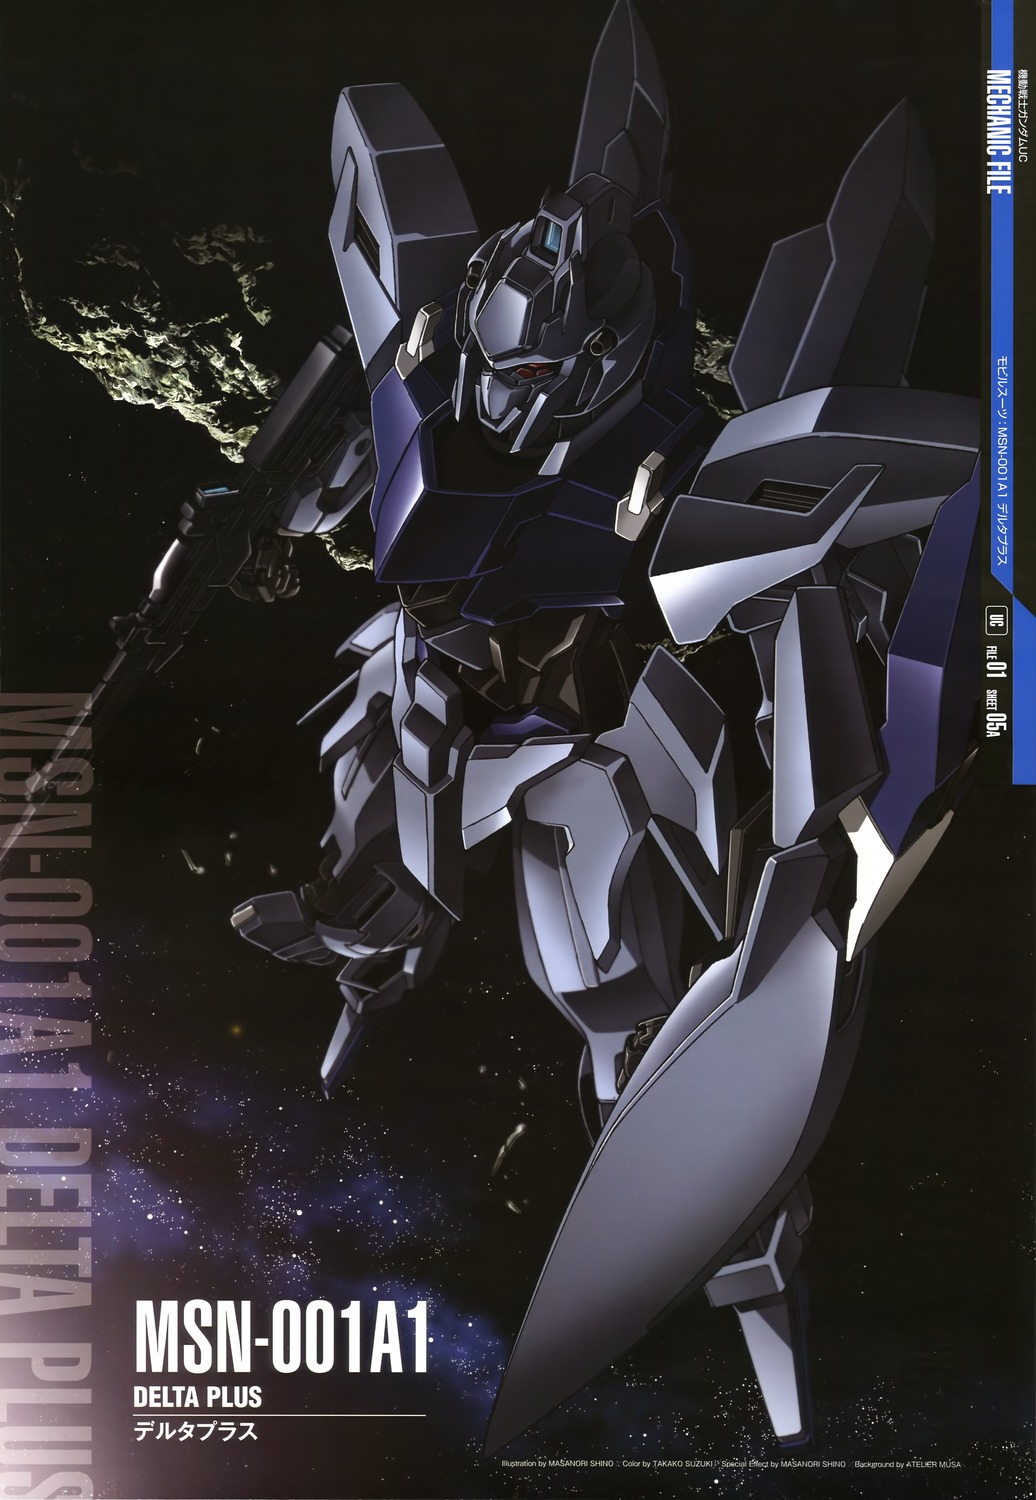 ... GUY: Mobile Suit Gundam Mechanic File - Wallpaper Size Images [Part 5